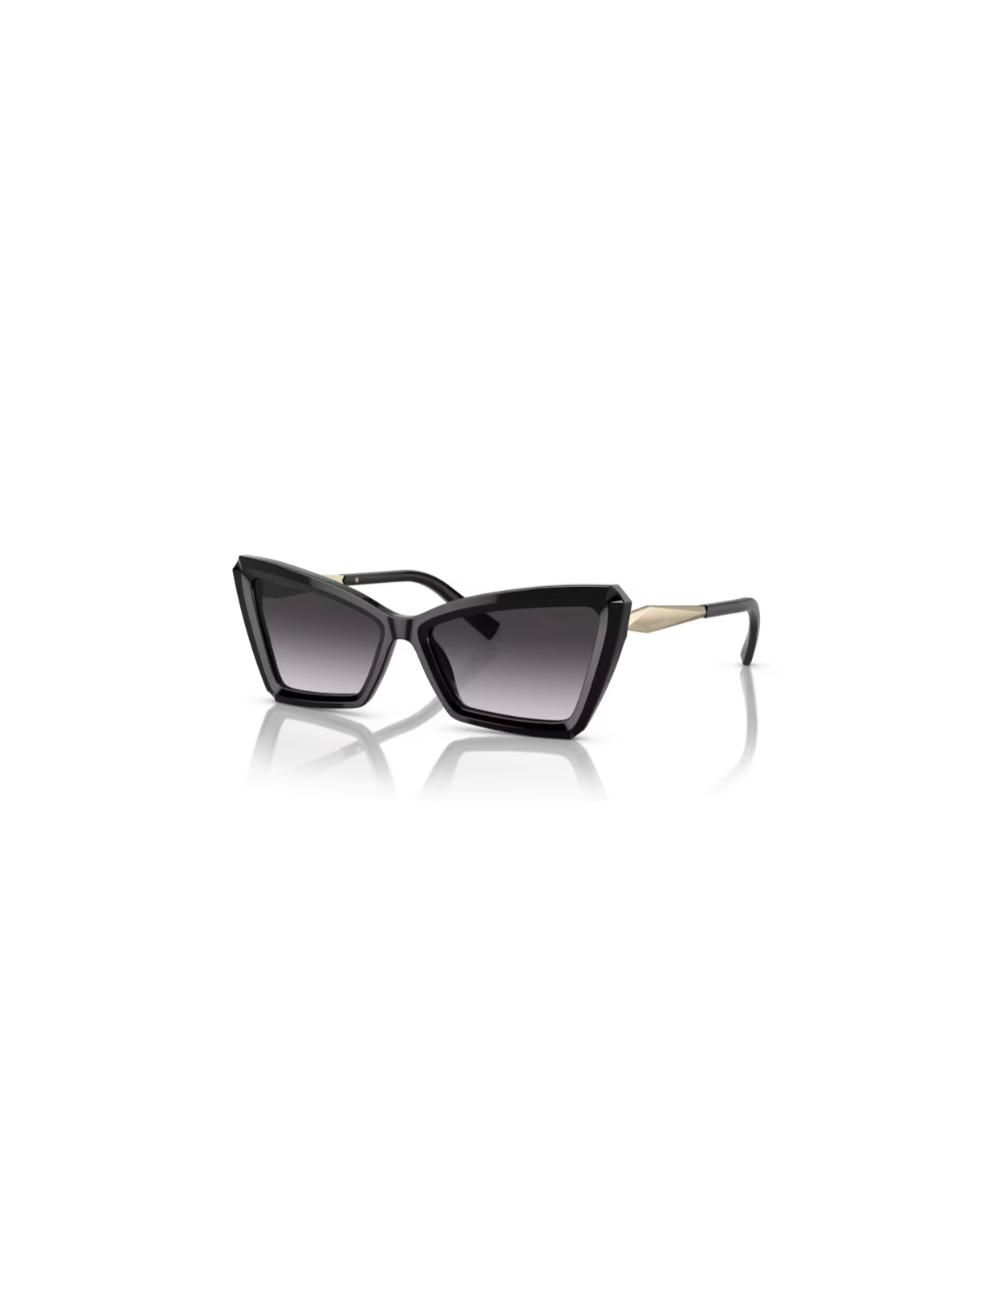 Tiffany & Co. TF4203 women sunglasses